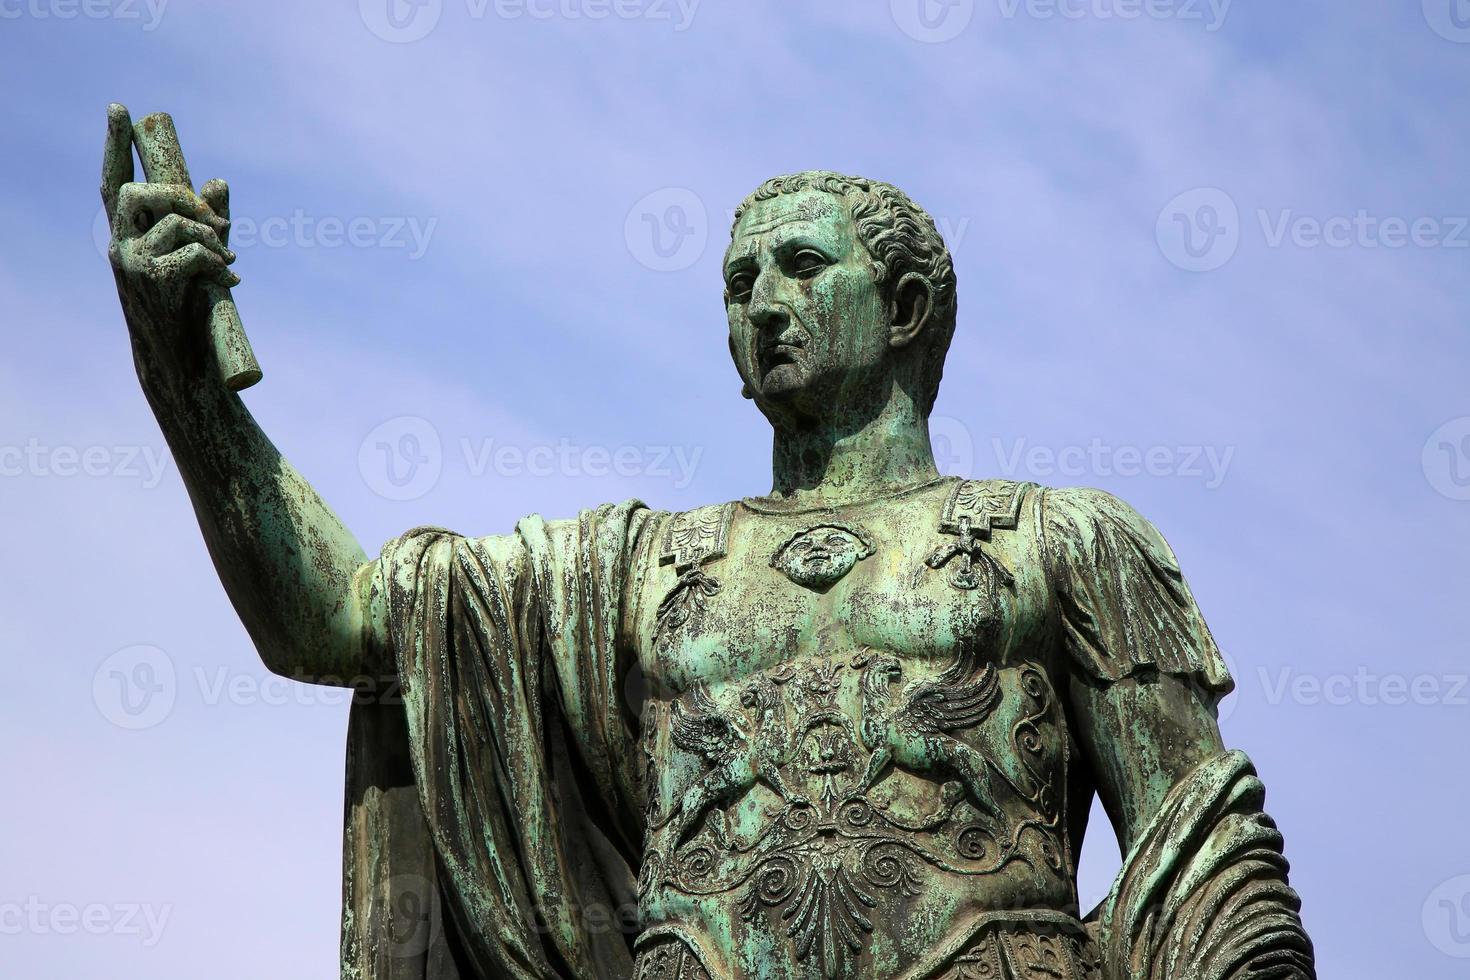 Statue Caesari Nervae Augustus, Rom, Italien foto